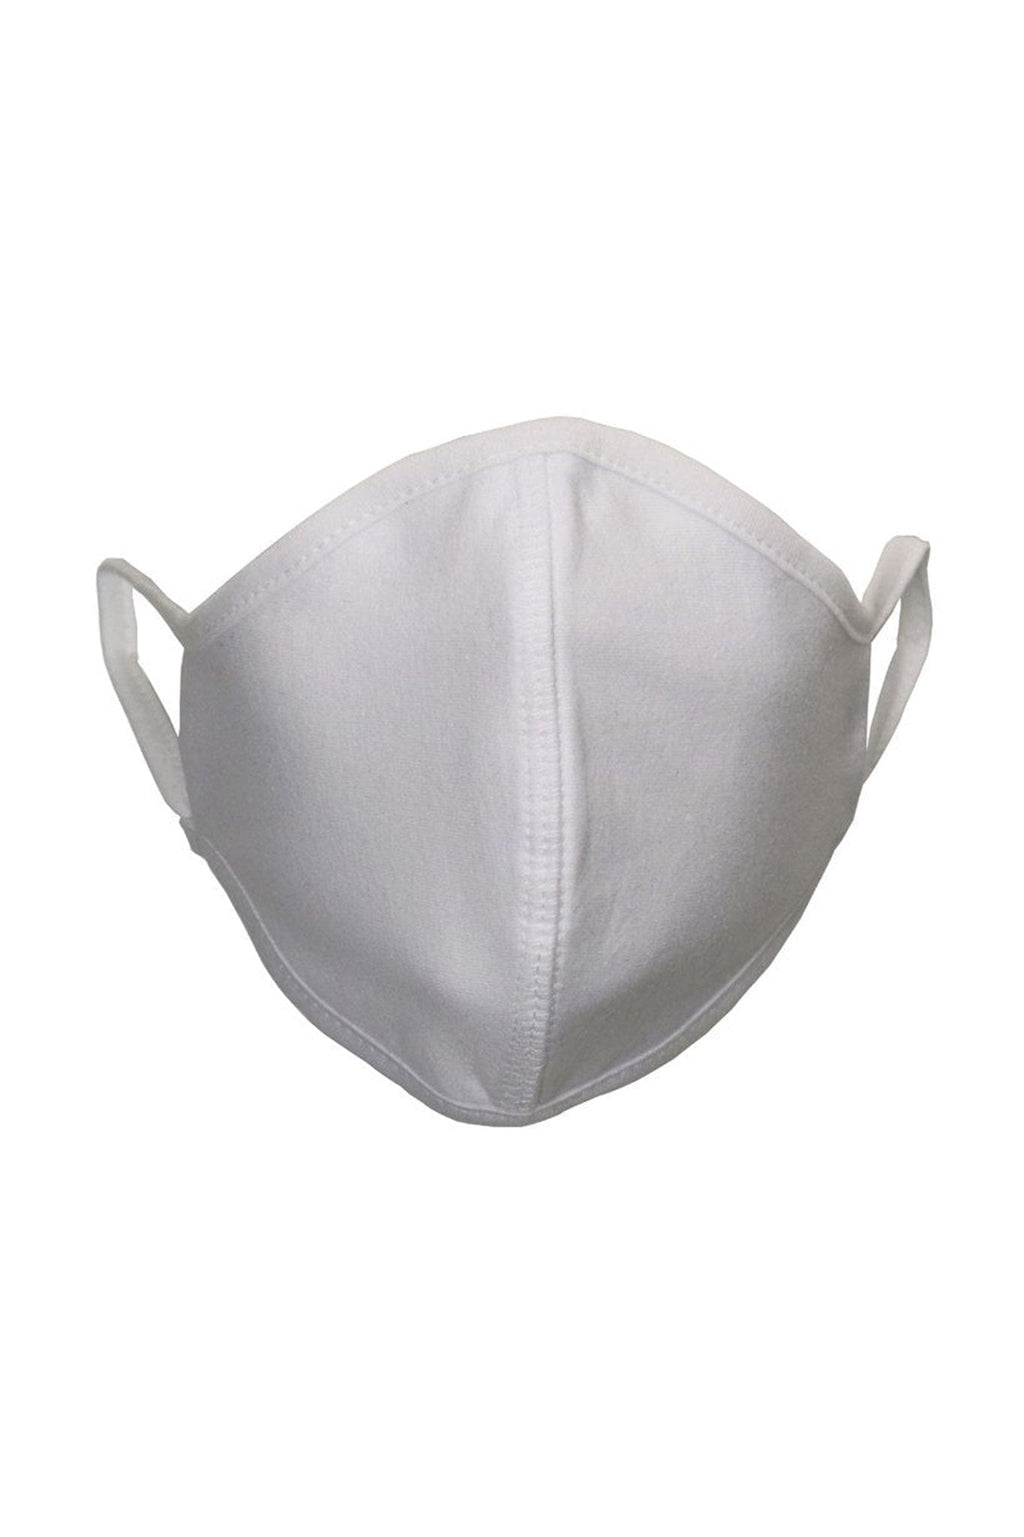 Fabric mask - White (organic cotton)